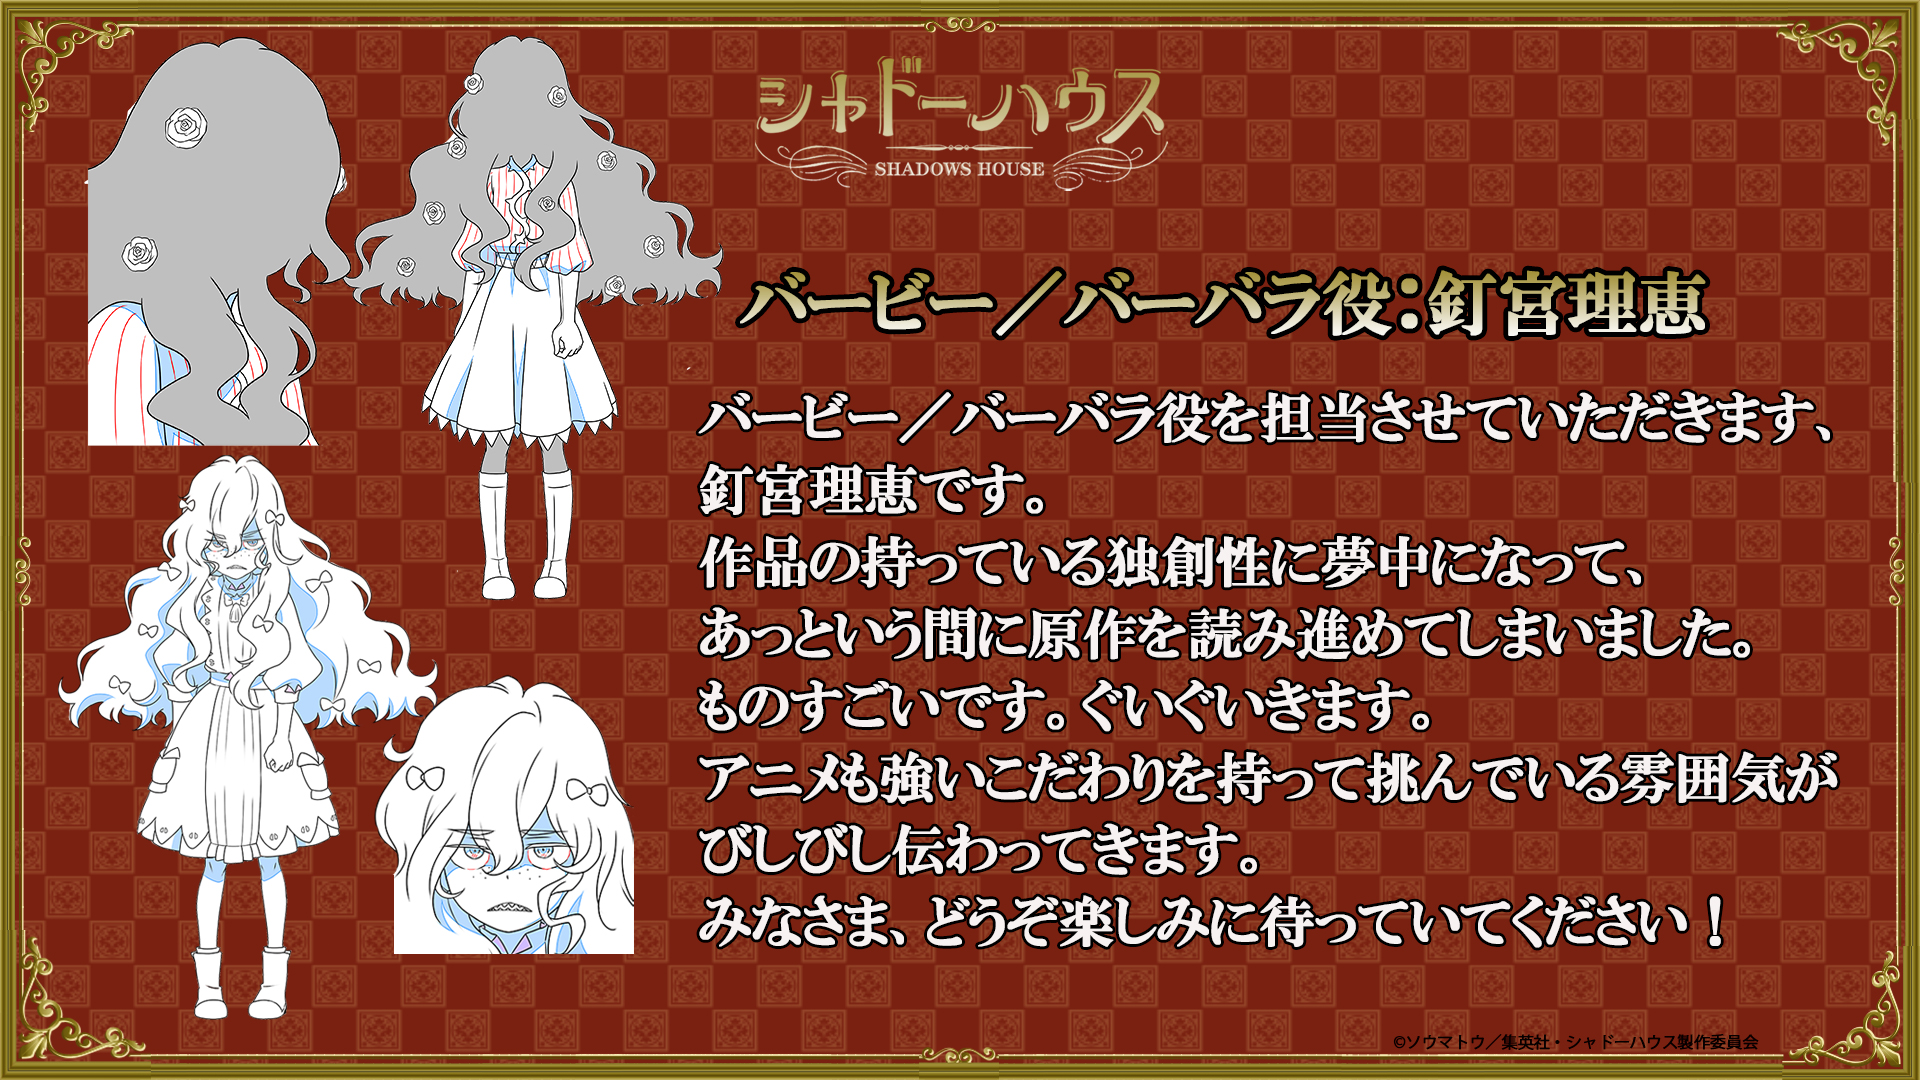 Eine Strichzeichnung von Barby und Barbara, einem Paar aus Schatten und lebender Puppe, das Rie Kugimiya im kommenden TV-Anime Shadows House geäußert hat.